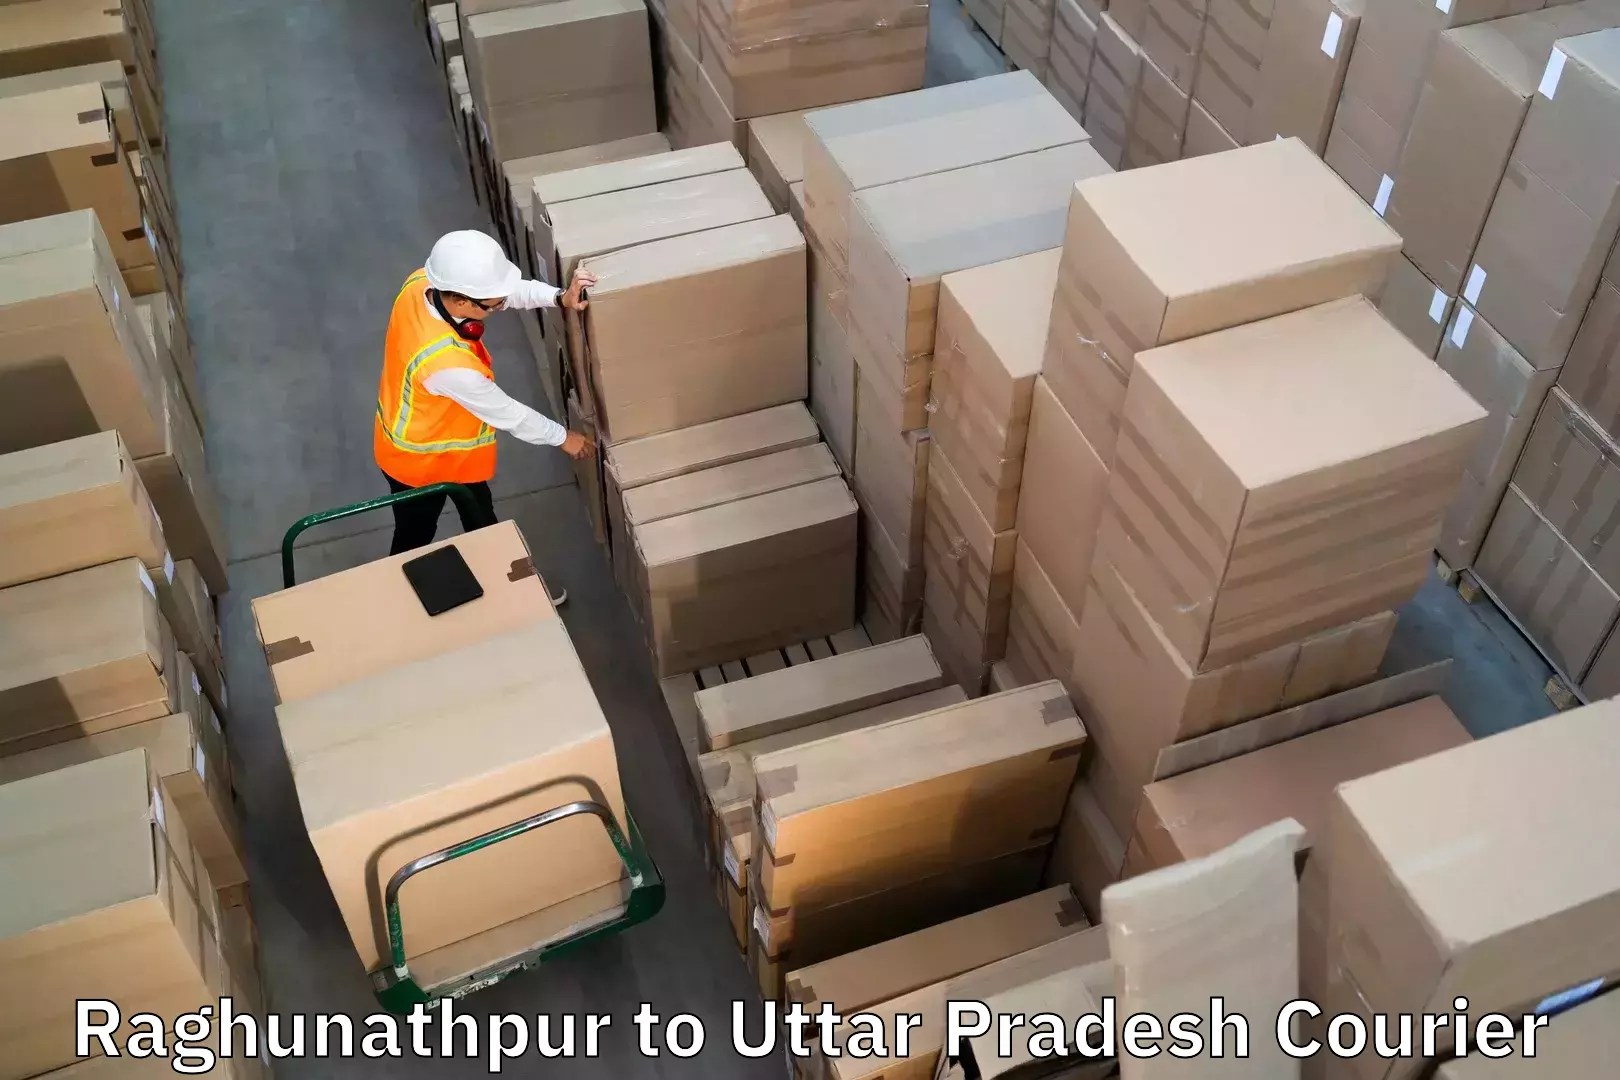 Baggage shipping schedule Raghunathpur to Lakhimpur